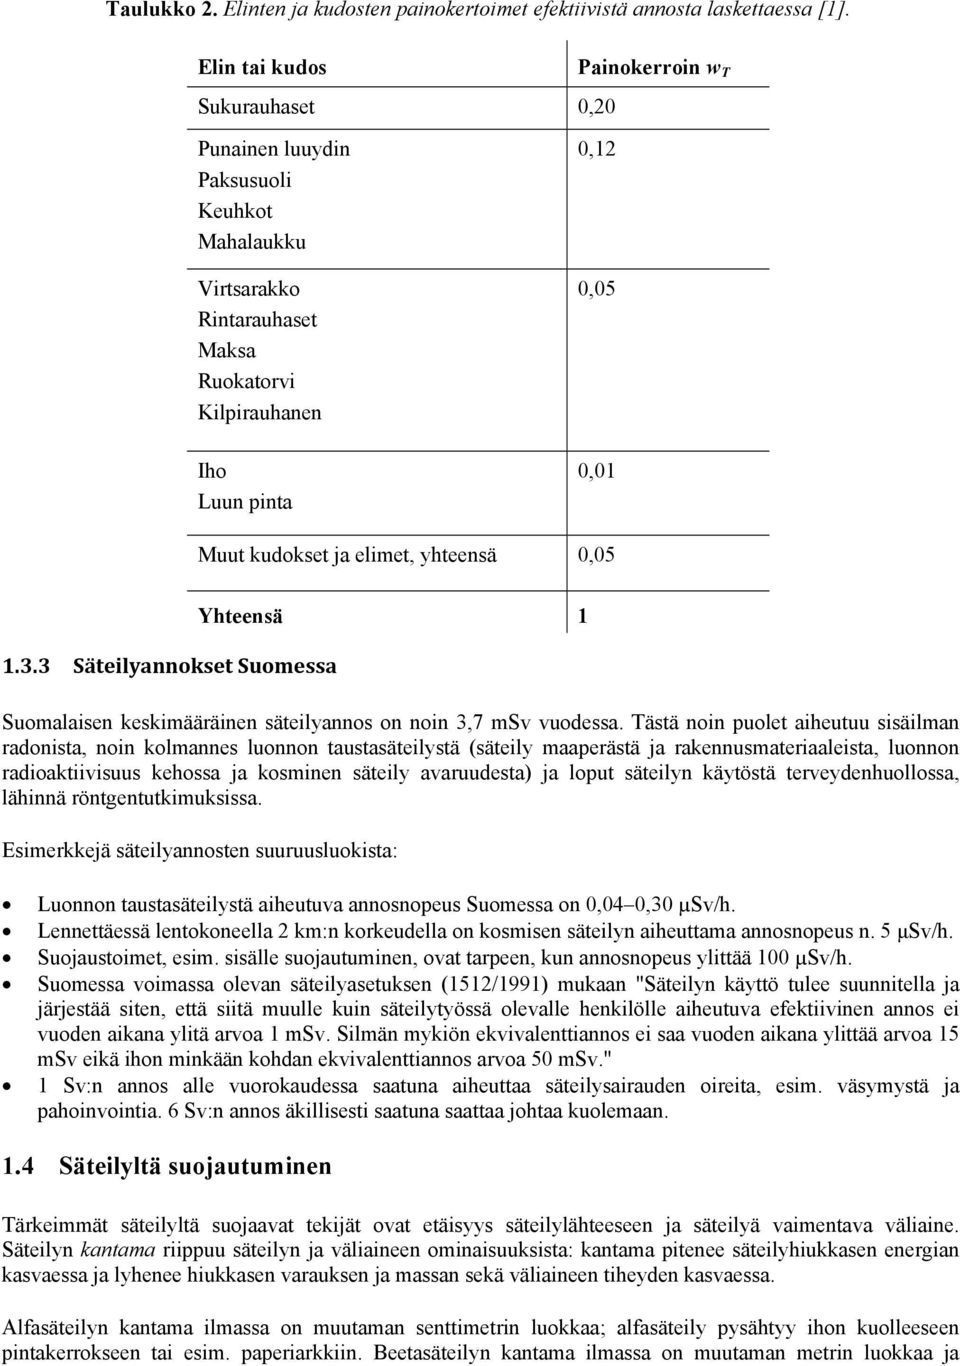 ja elimet, yhteensä 0,05 1.3.3 Säteilyannokset Suomessa Yhteensä 1 Suomalaisen keskimääräinen säteilyannos on noin 3,7 msv vuodessa.